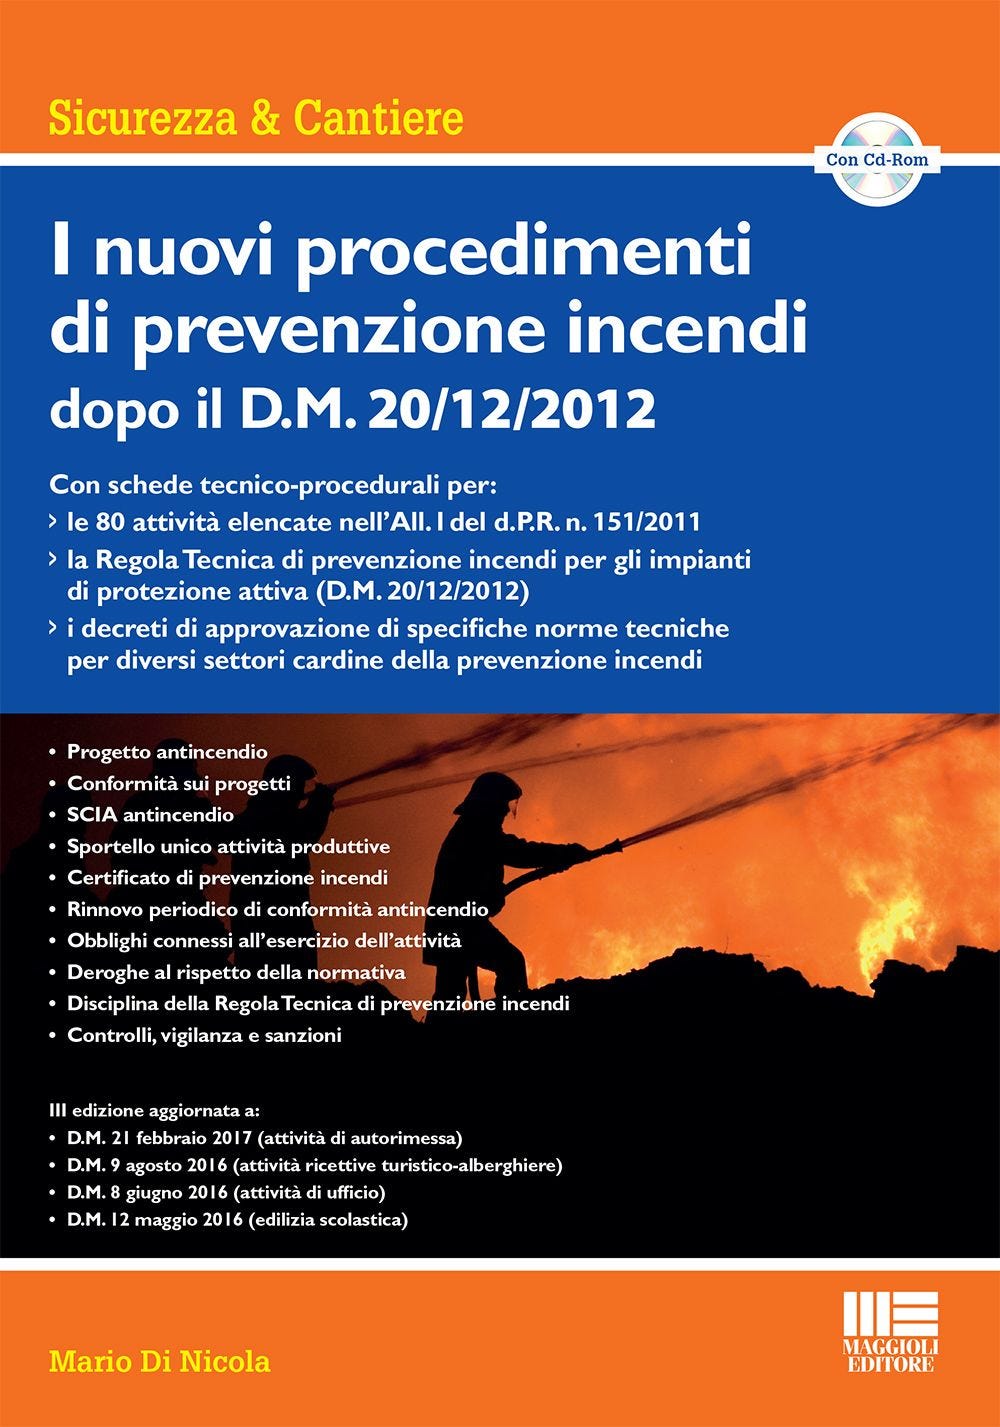 I nuovi procedimenti di prevenzione incendi dopo il D.M. 20/12/2012